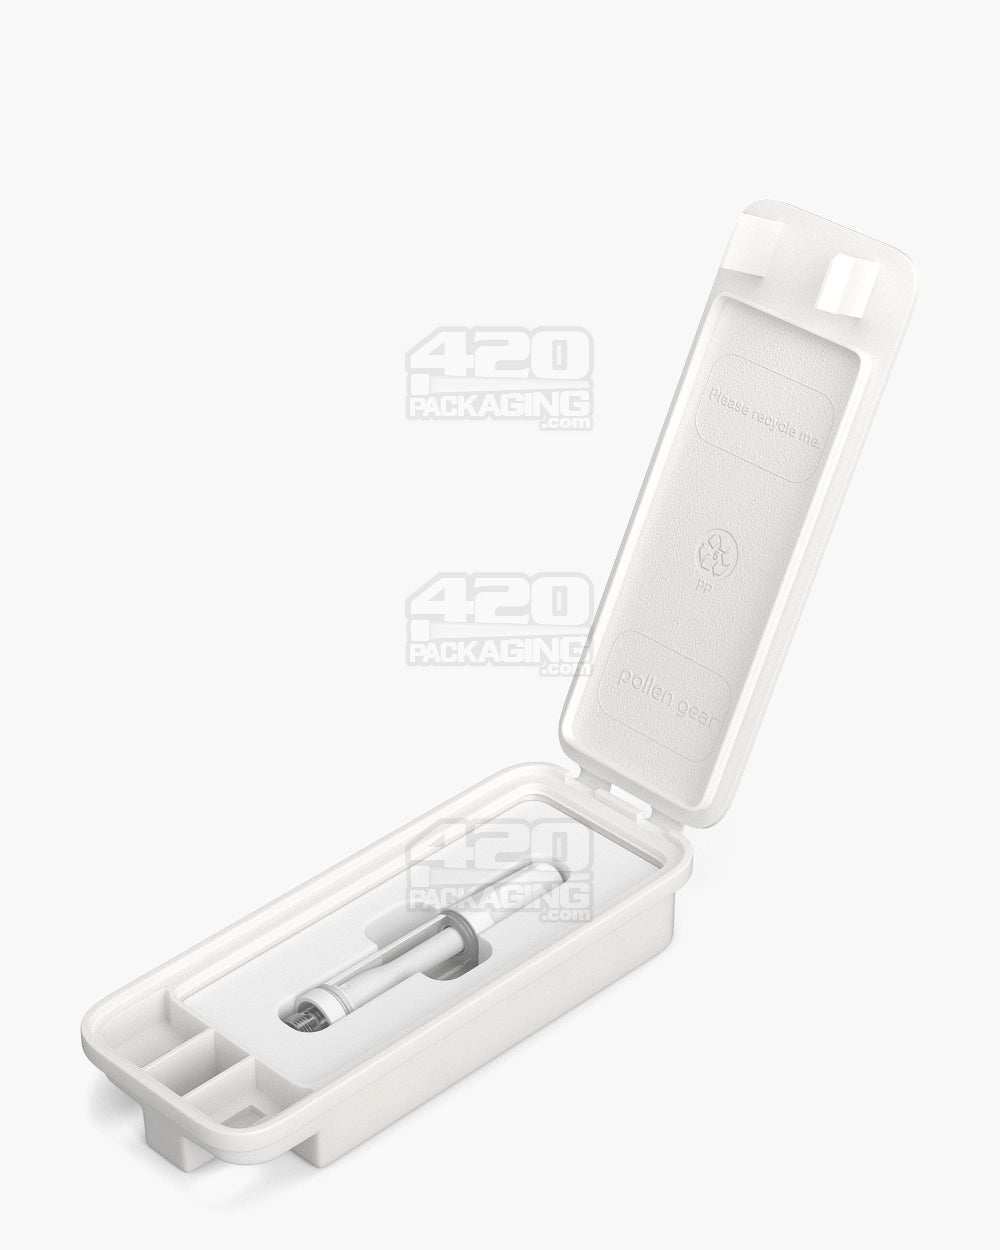 65mm Pollen Gear SnapTech Small White Cartridge Case Foam Inserts 1000/Box